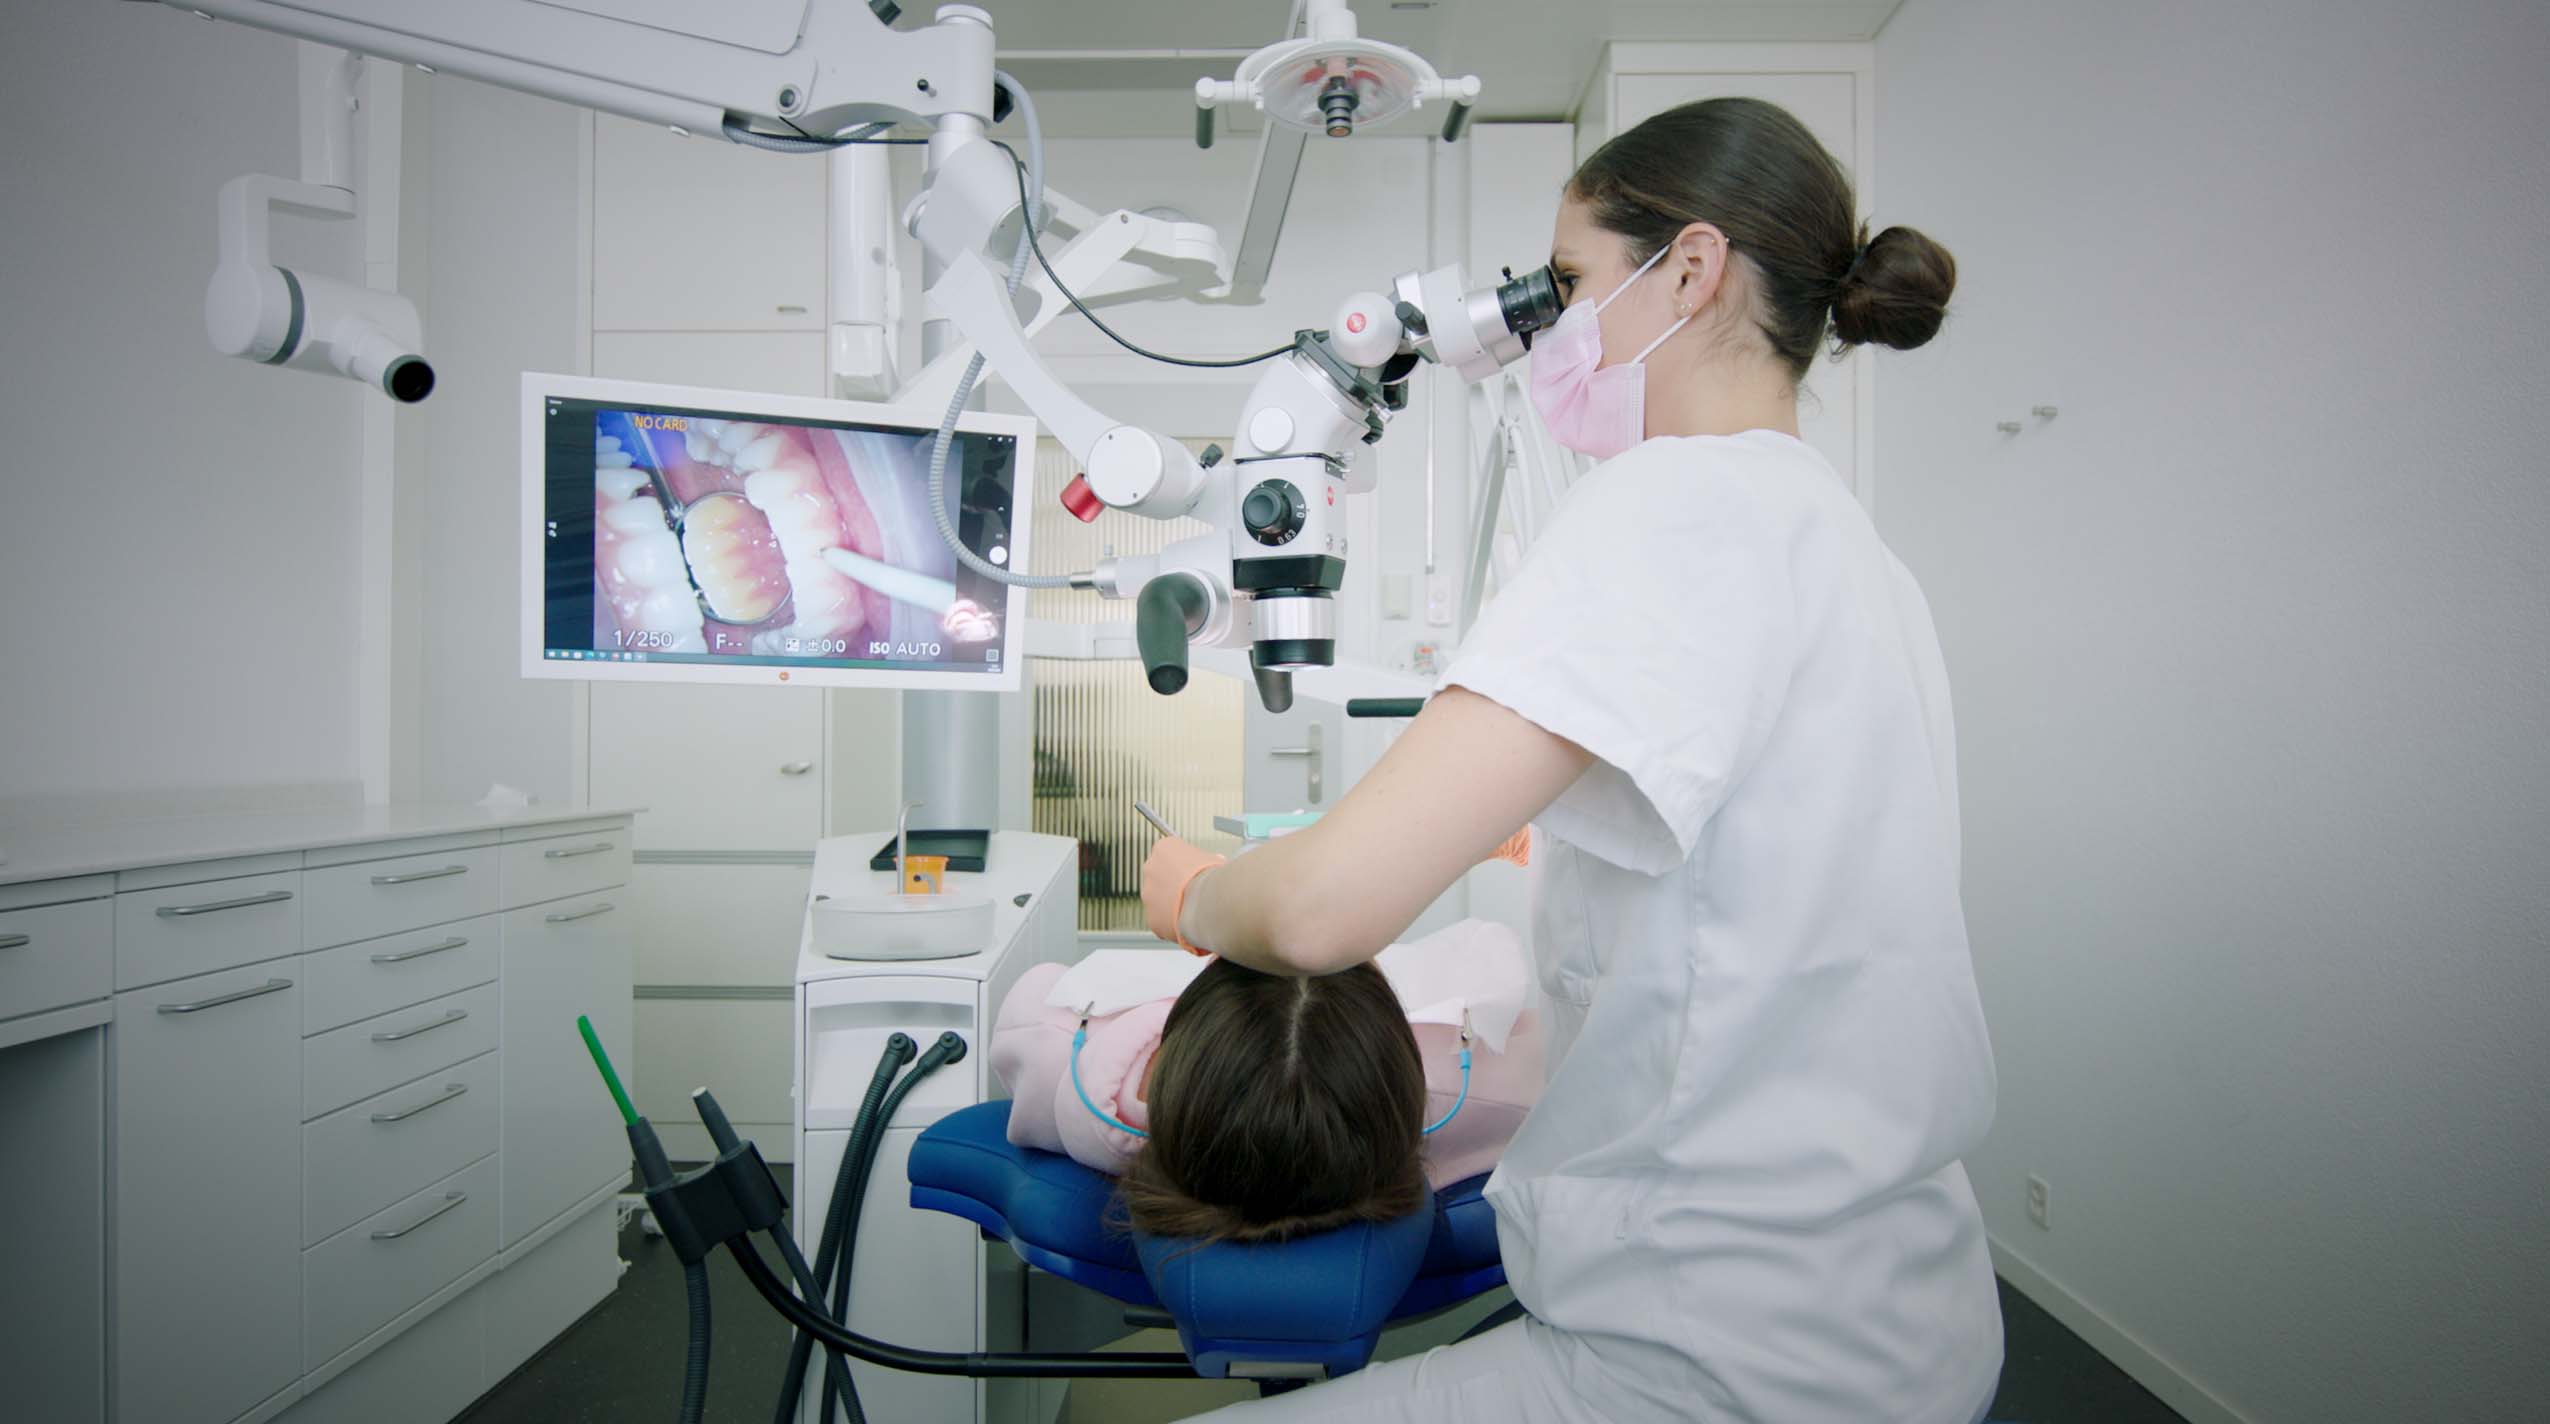 Aktuelles Behandlungszimmer der zmk mit Mikroskop und Röntgen an der Dentaleinheit.